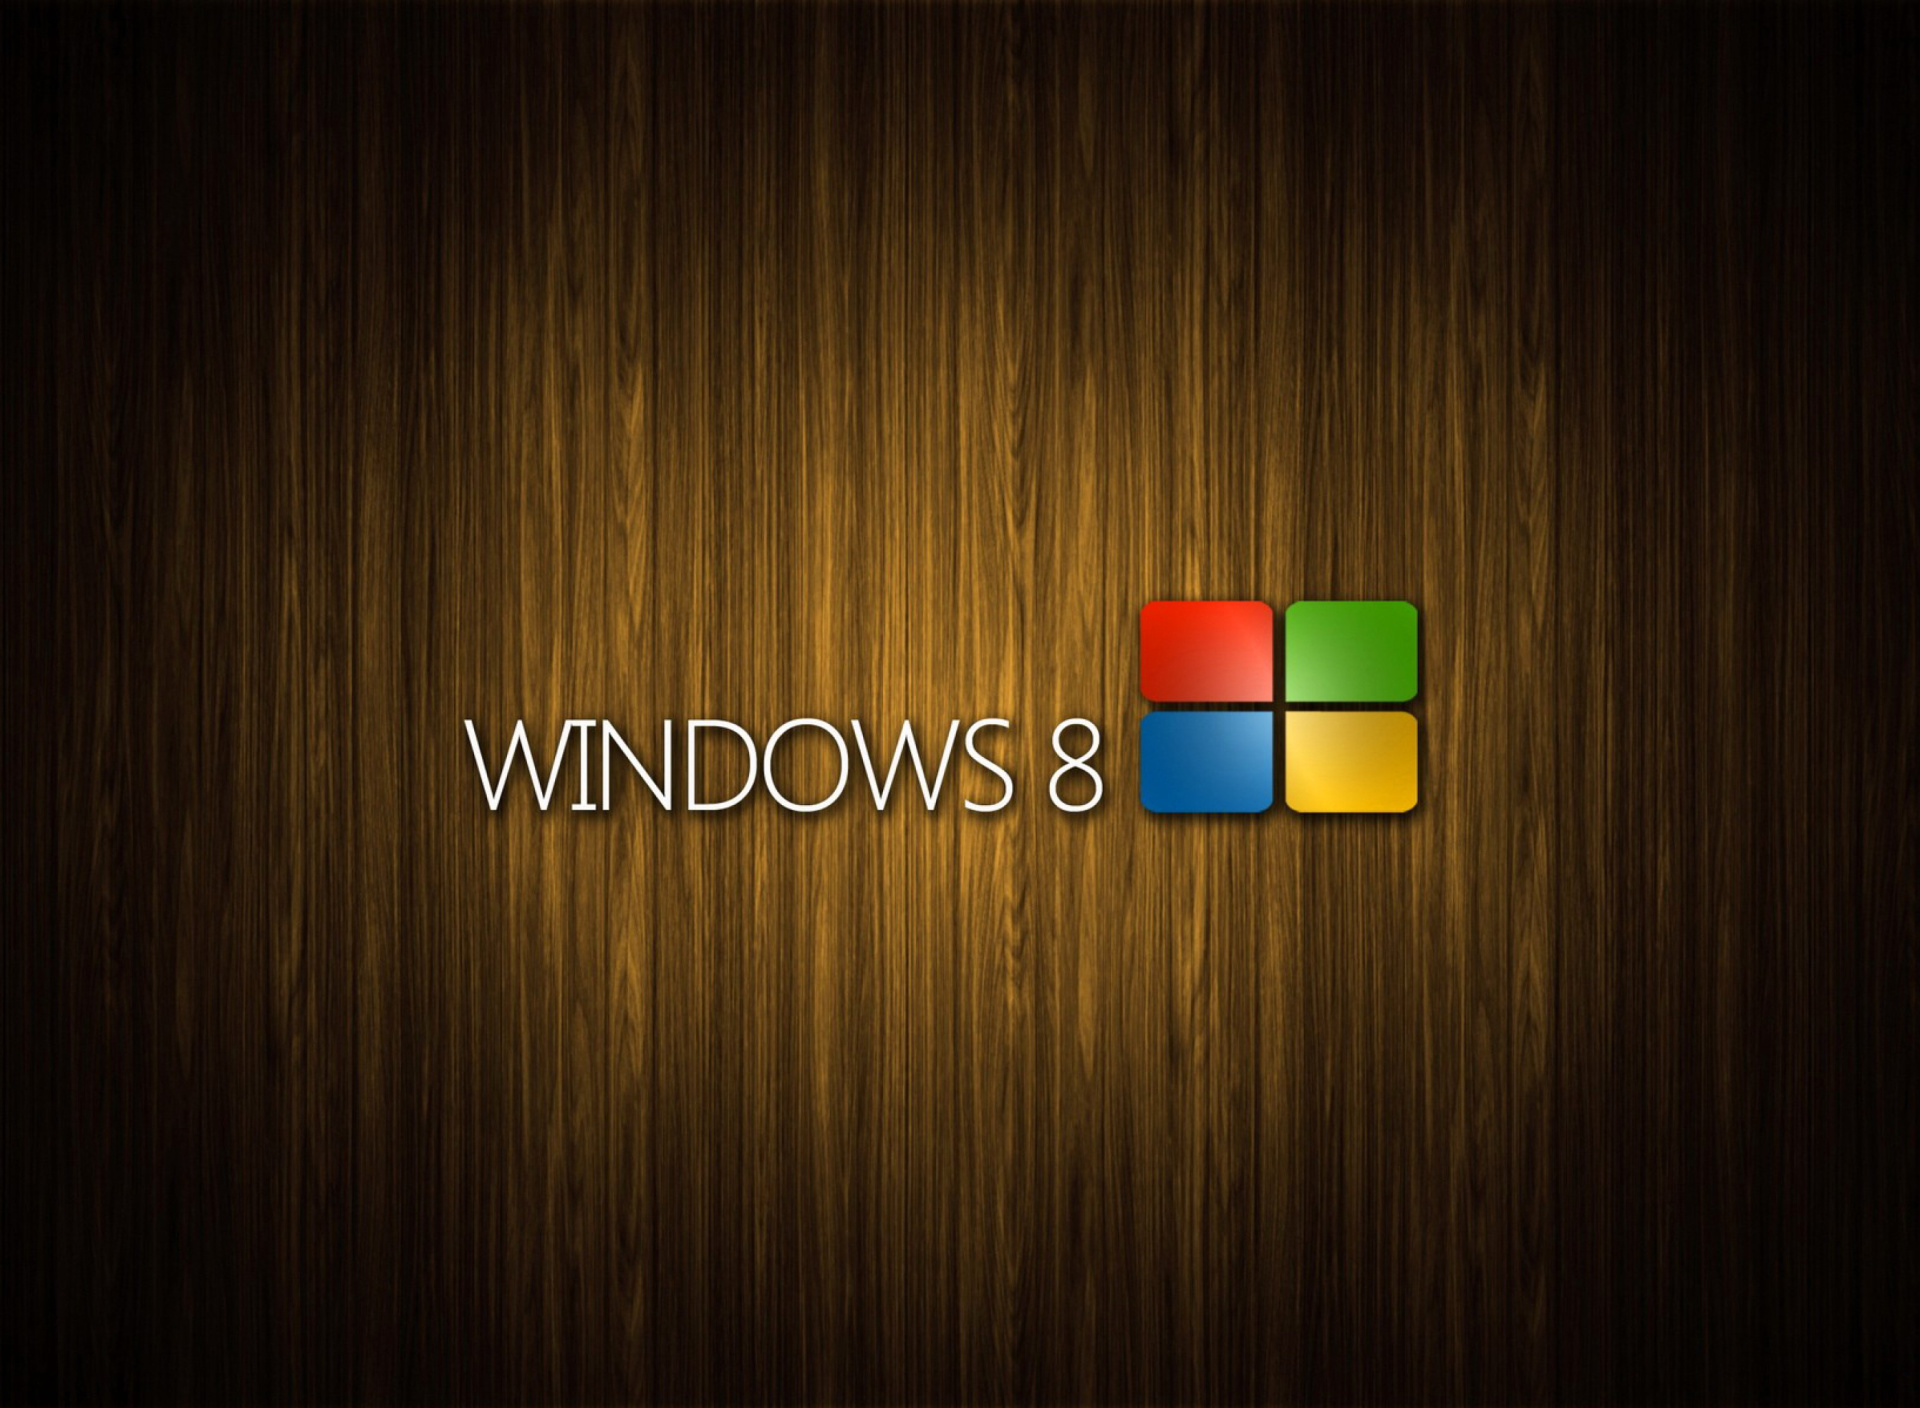 Windows 8 Wooden Emblem screenshot #1 1920x1408